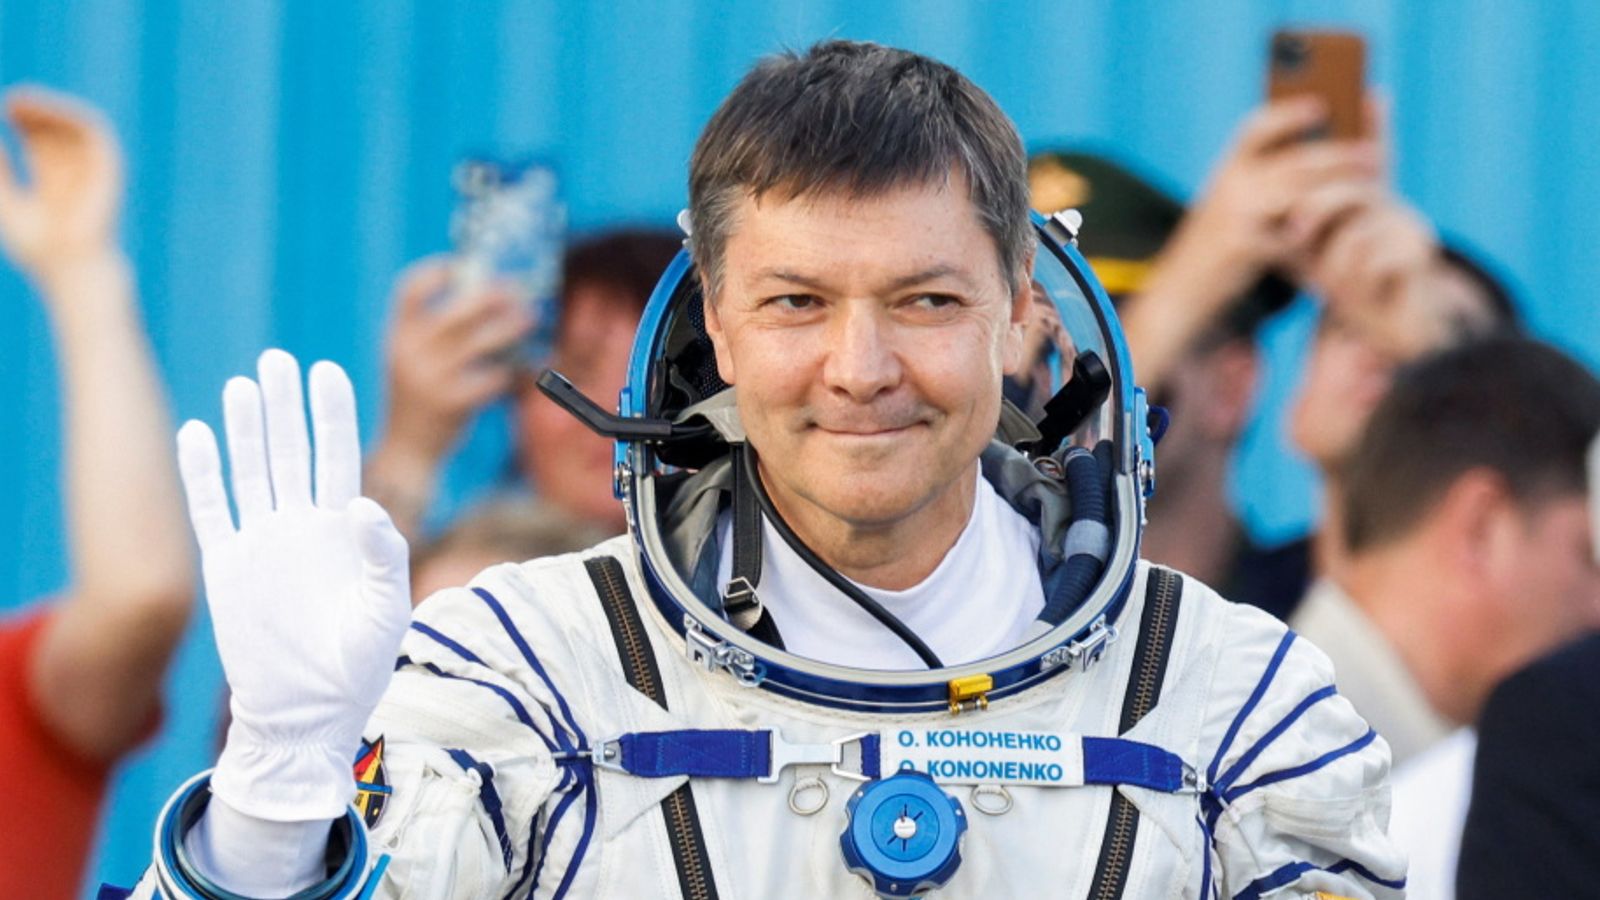 Rus kozmonot Oleg Kononenko rekor kırdı! Tam 878 gün 12 saattir uzayda